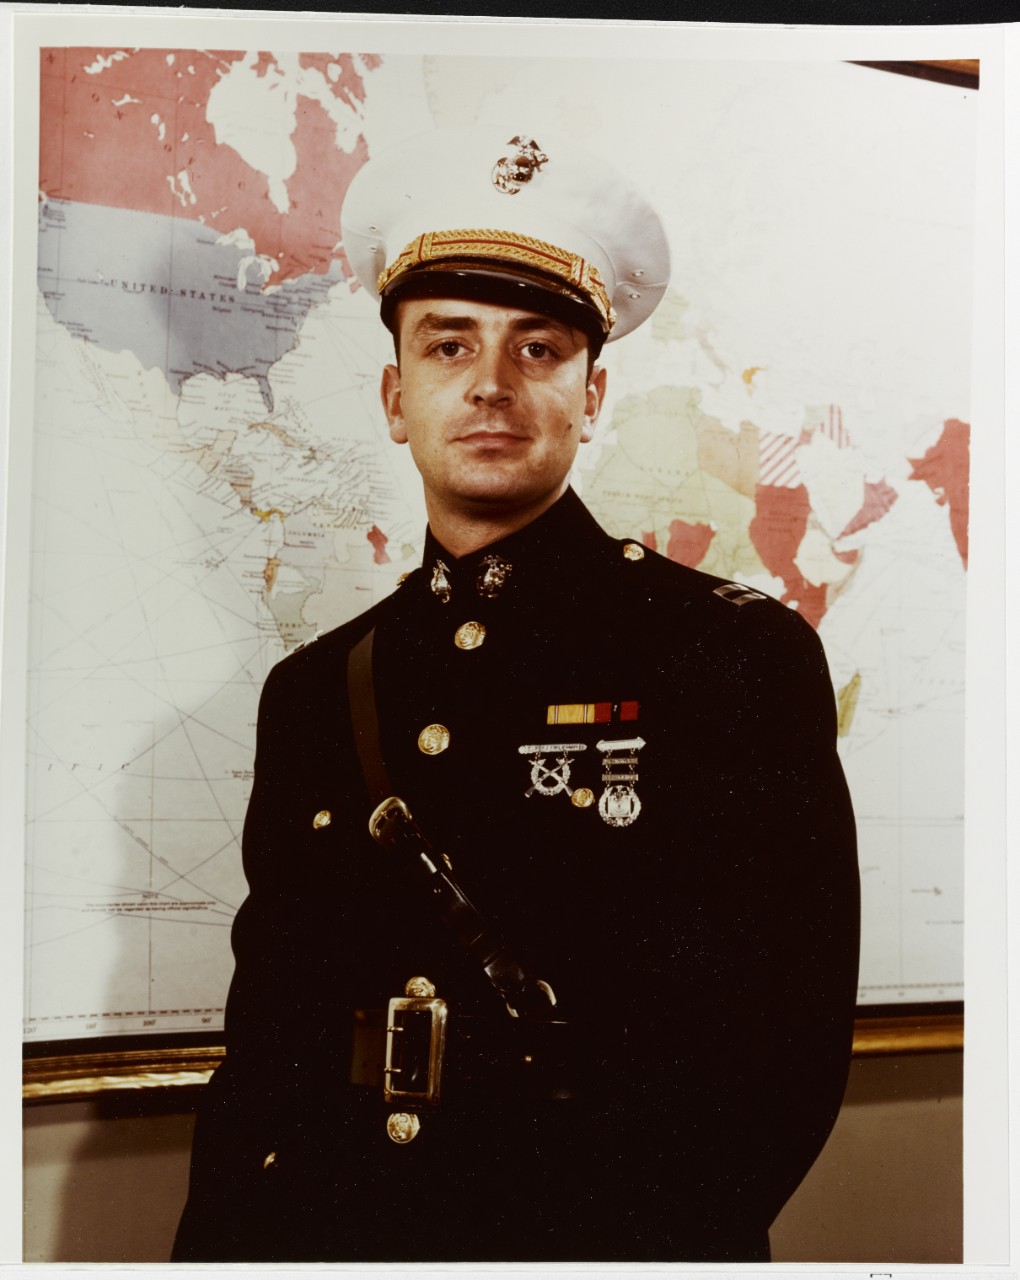 Captain John H. Dillon, U.S. Marine Corps Reserve